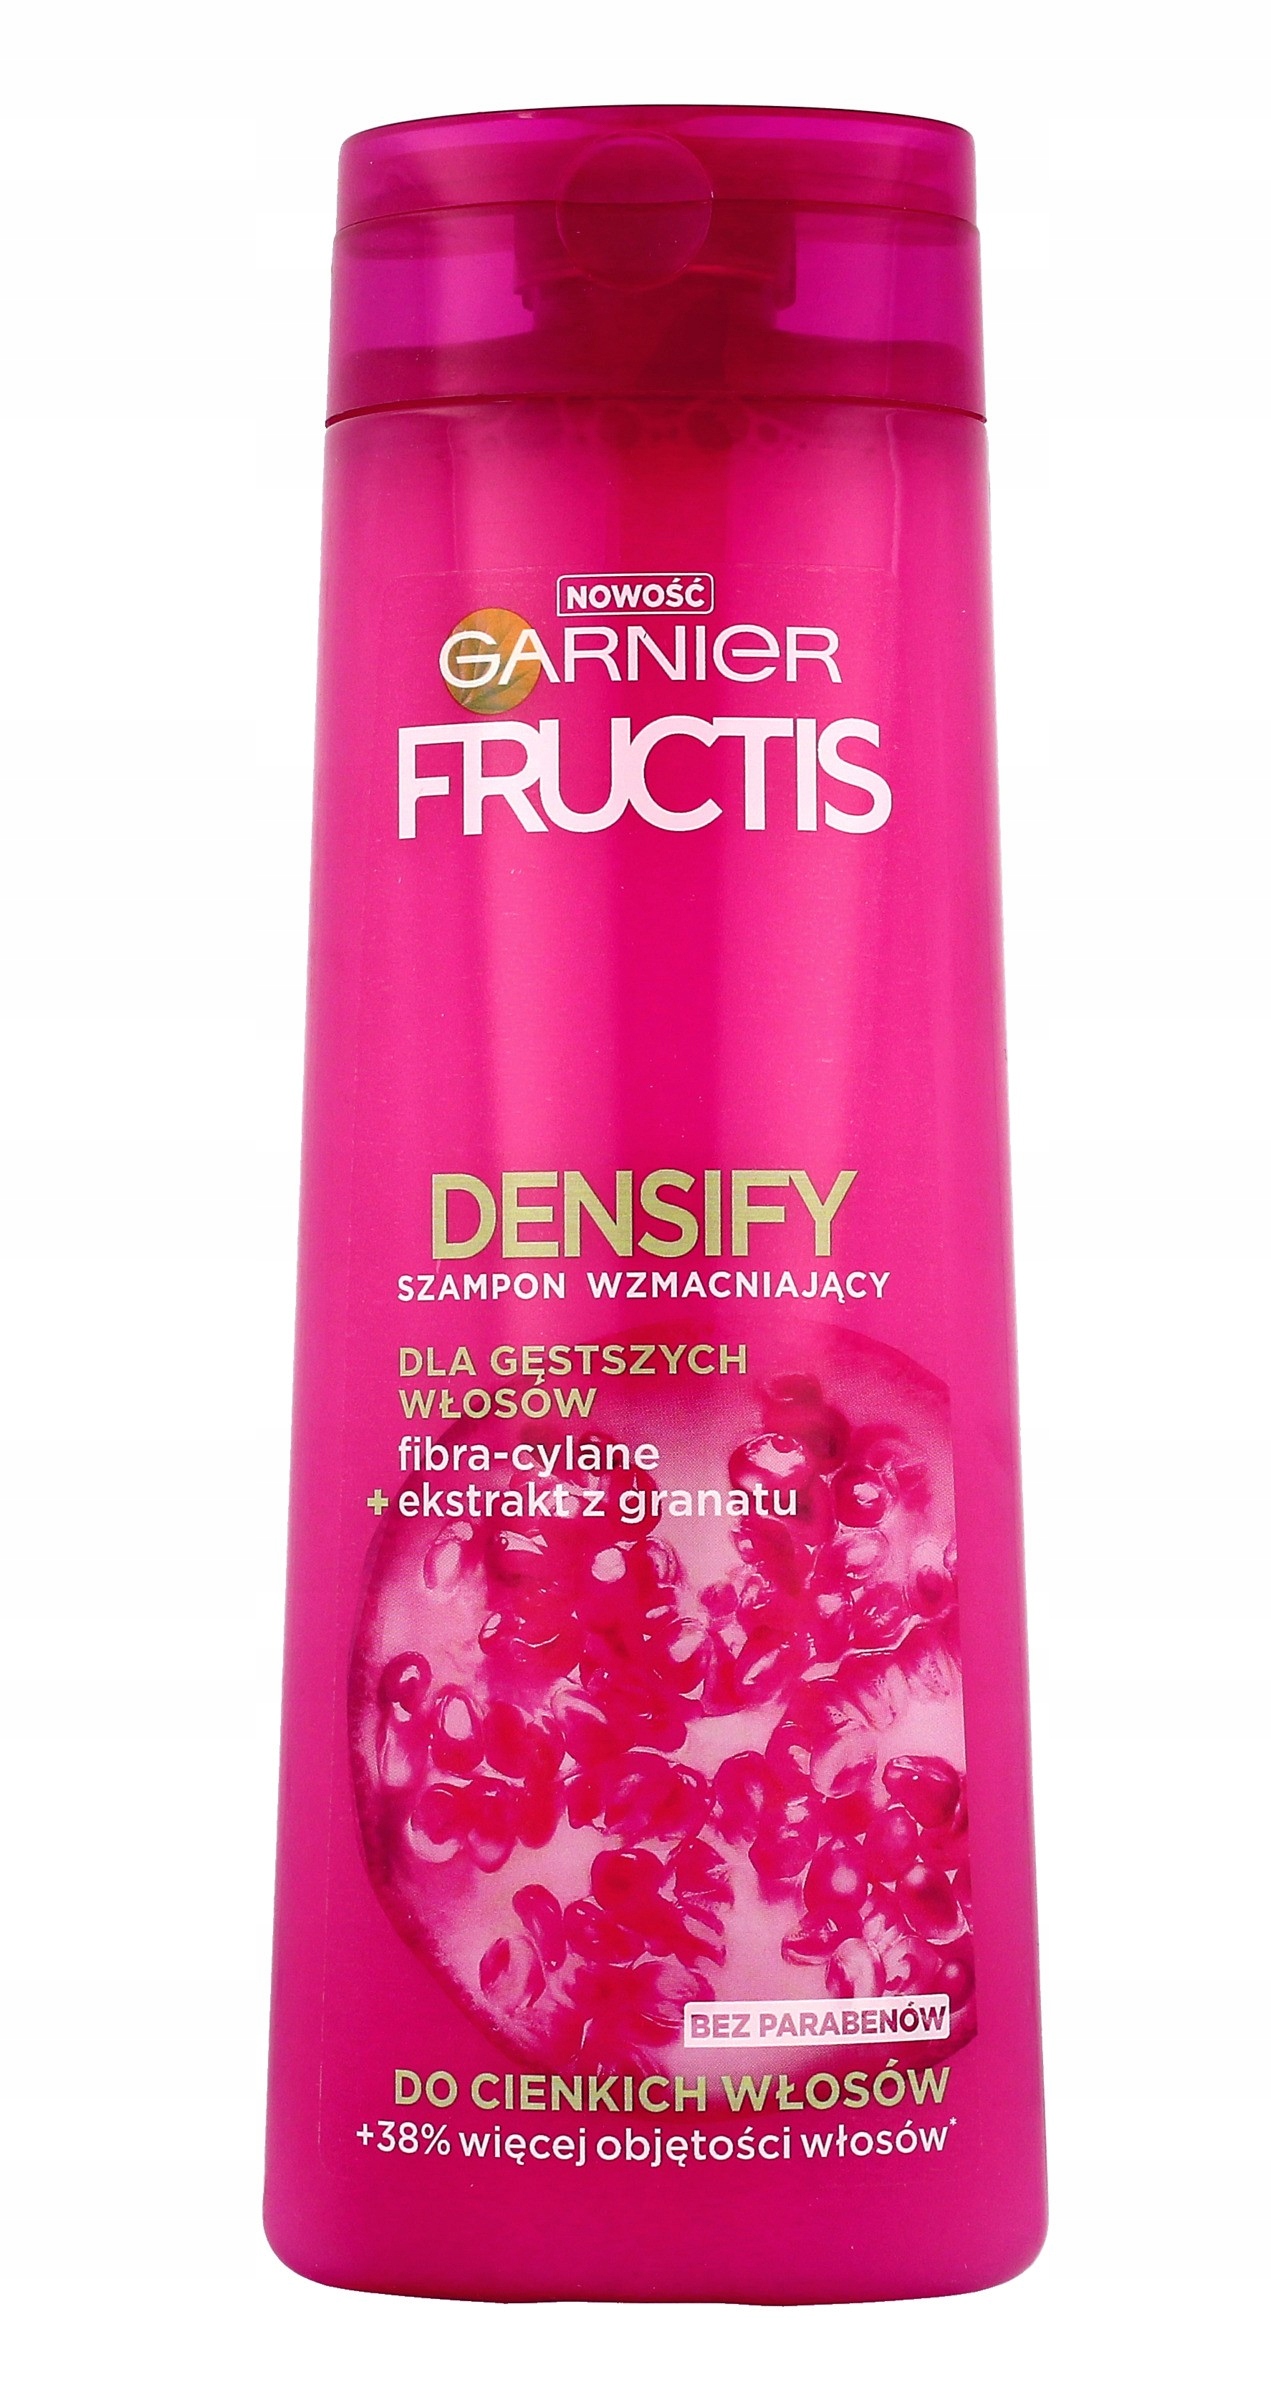 fructis densify szampon do włosów nadający objętość